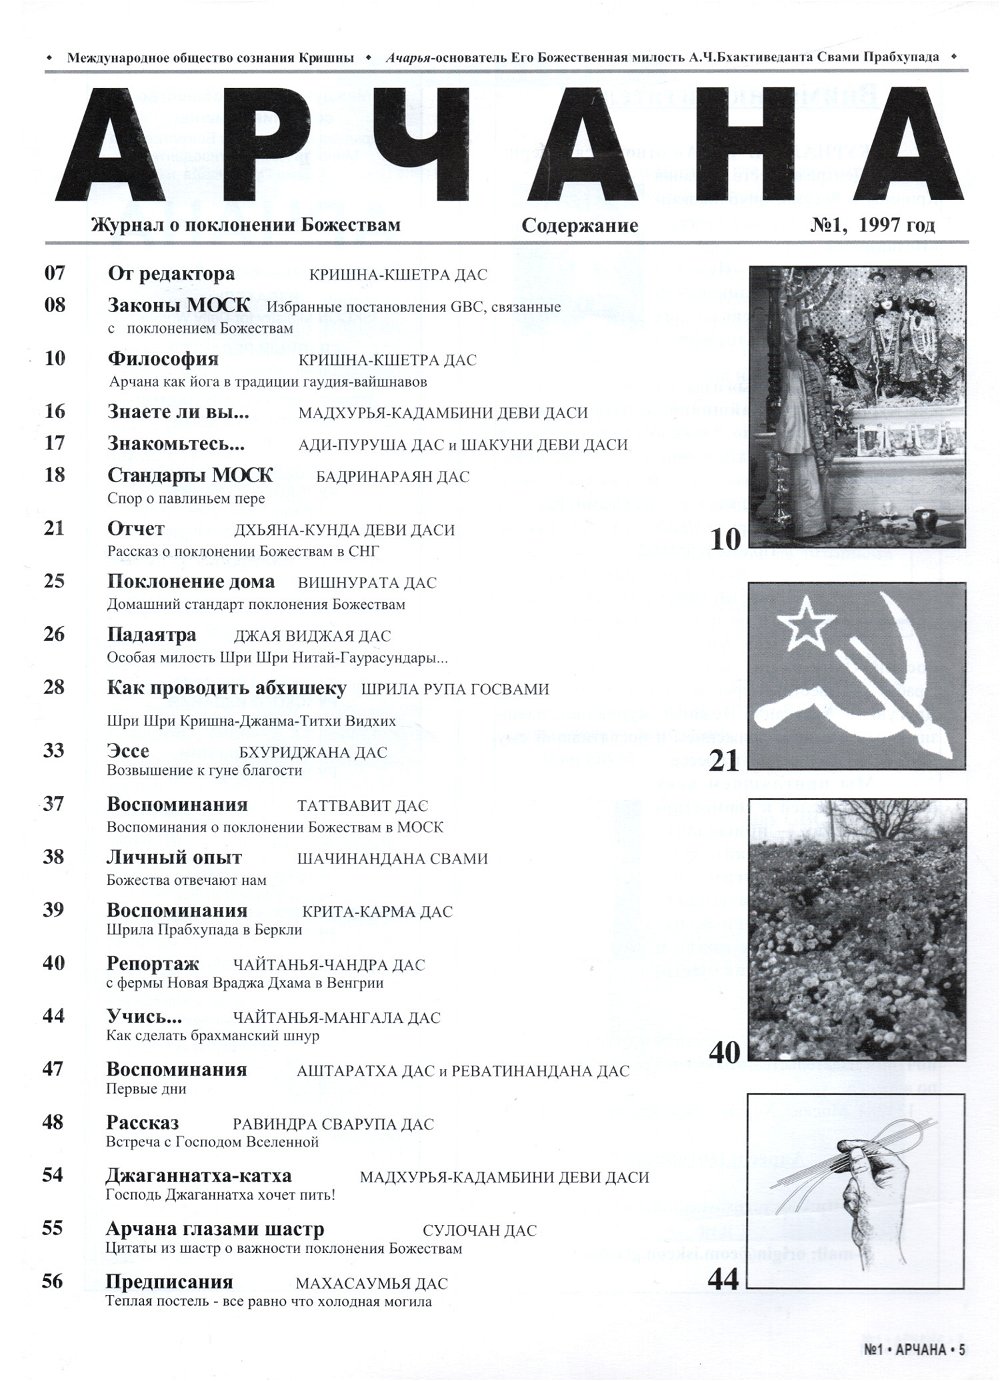 Журнал Арчана №1 (1997), 21 x 28 см